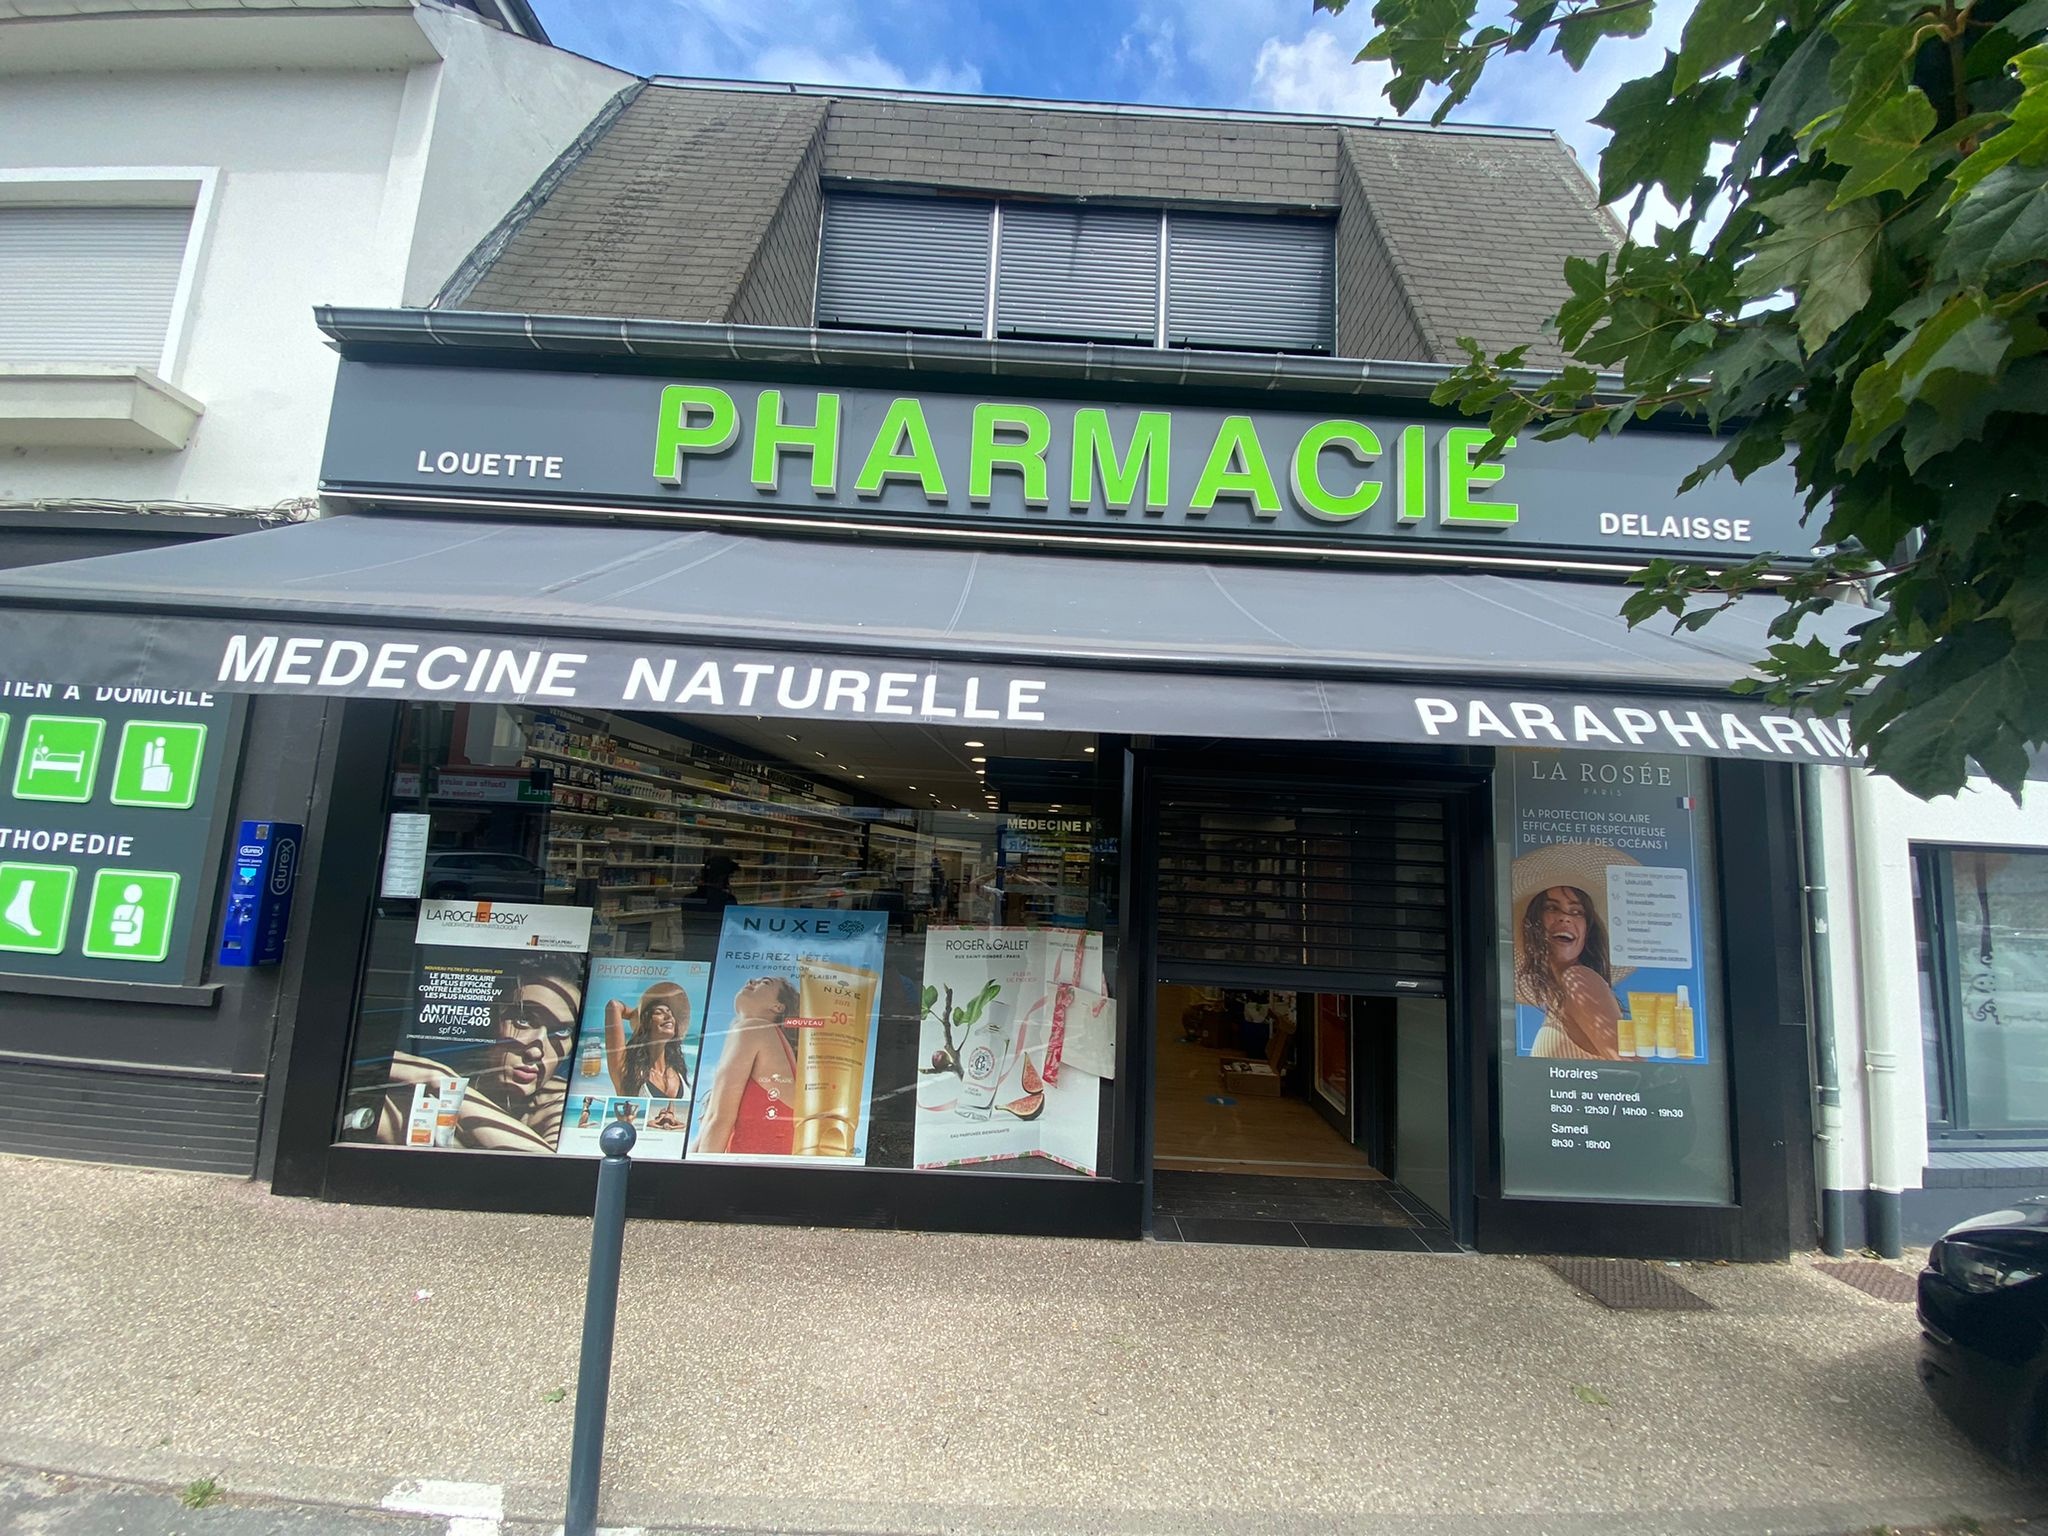 Magasin Pharmacie Louette Delaisse Sarl - Rue (80120) Visuel 3